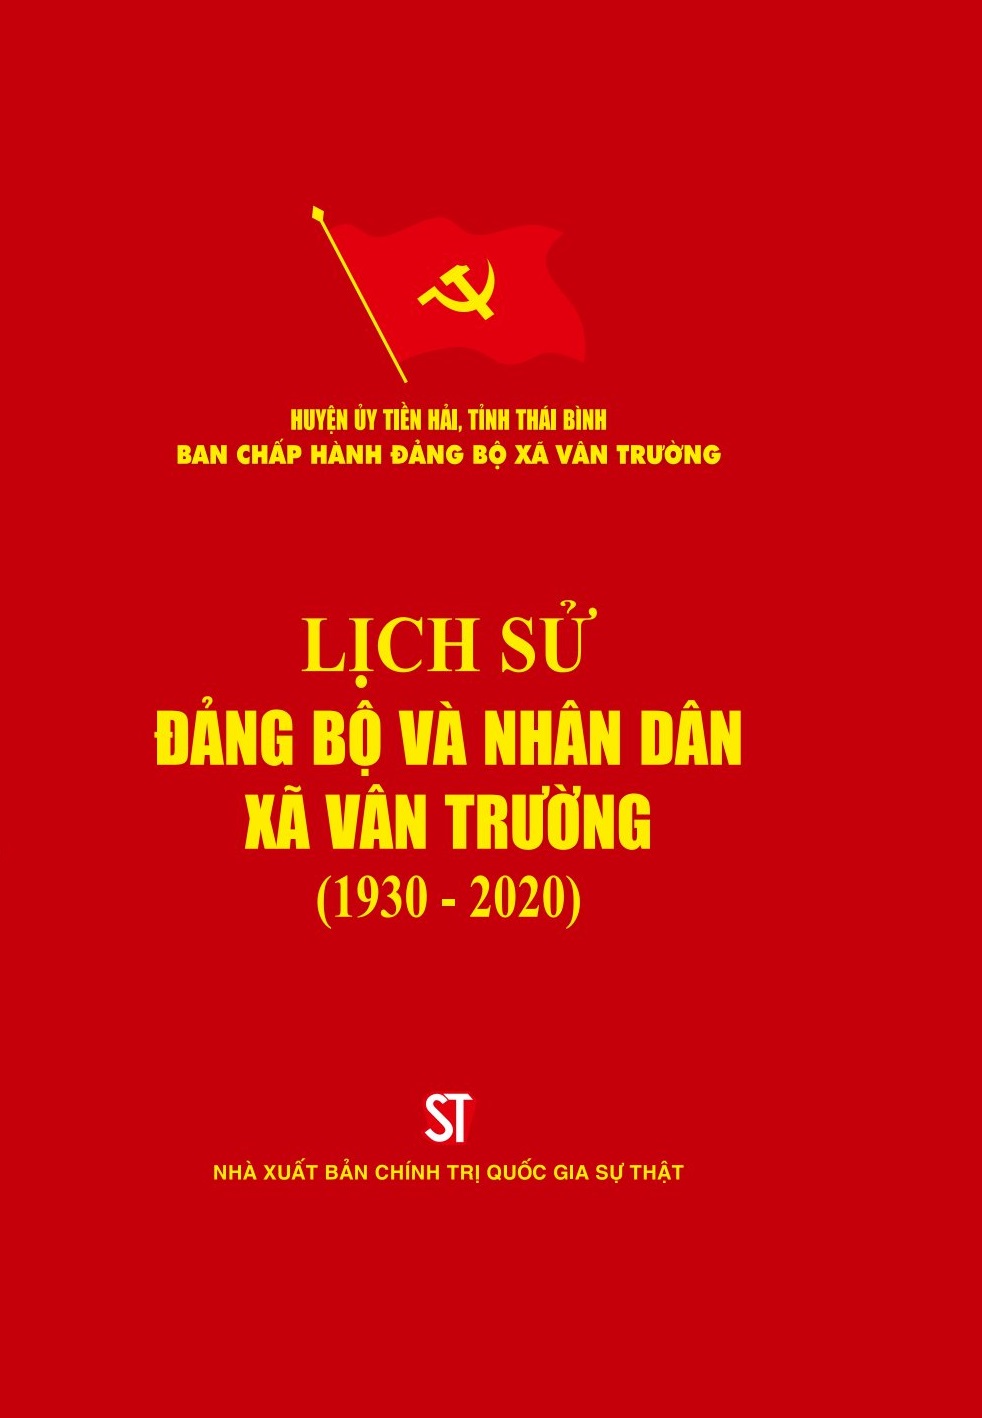 Lịch sử Đảng bộ và nhân dân xã Vân Trường 1930 - 2020 